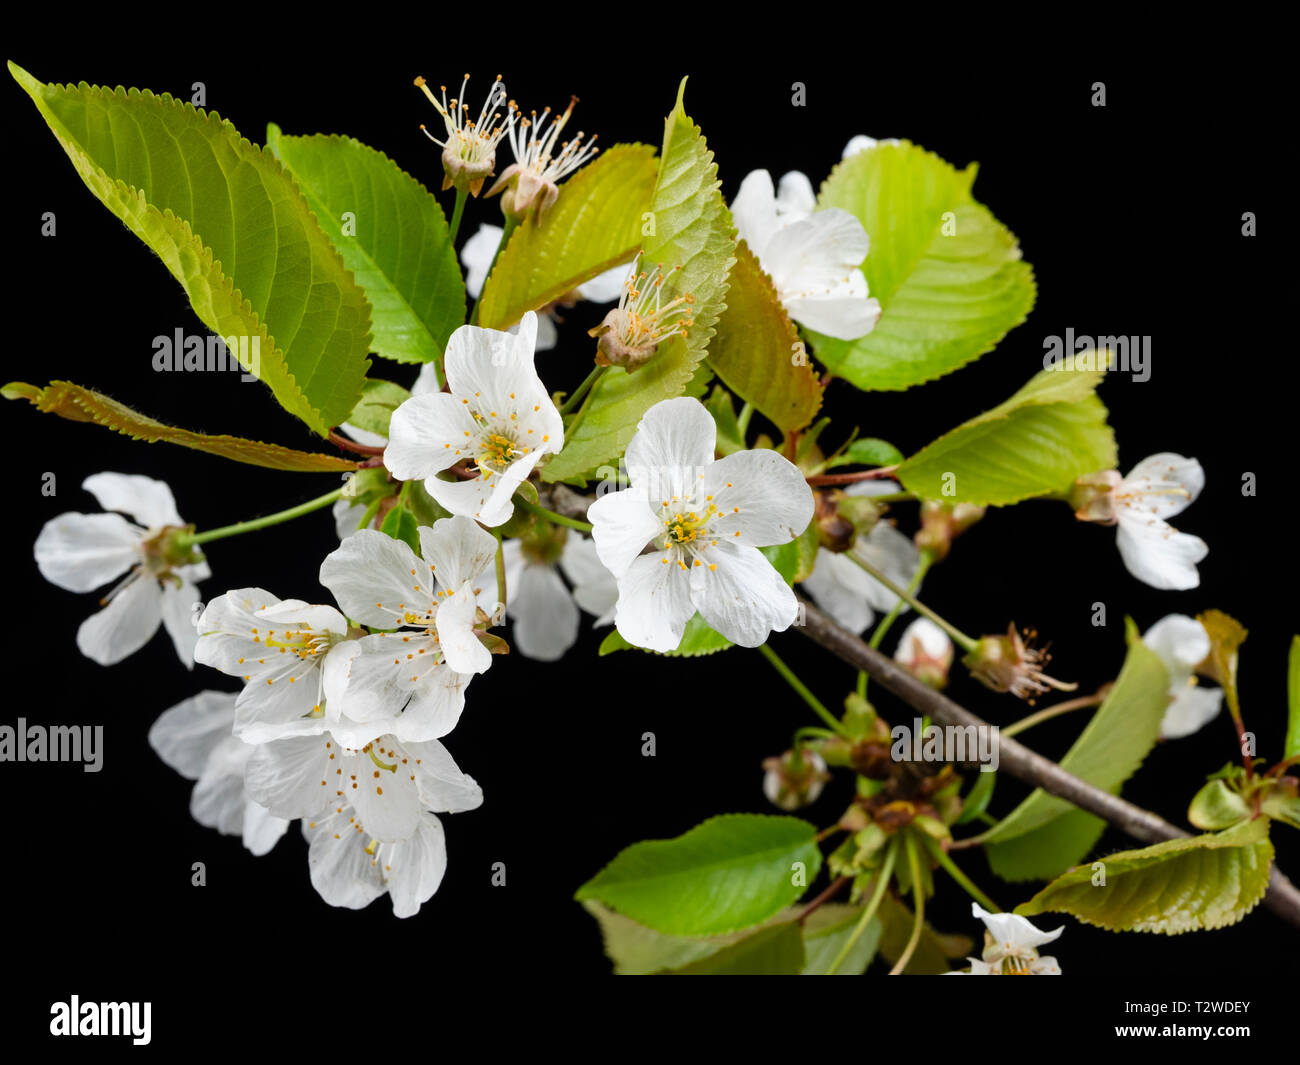 Flores blancas de los cerezos silvestres, Prunus avium, a principios de la primavera florecen contra un fondo negro Foto de stock